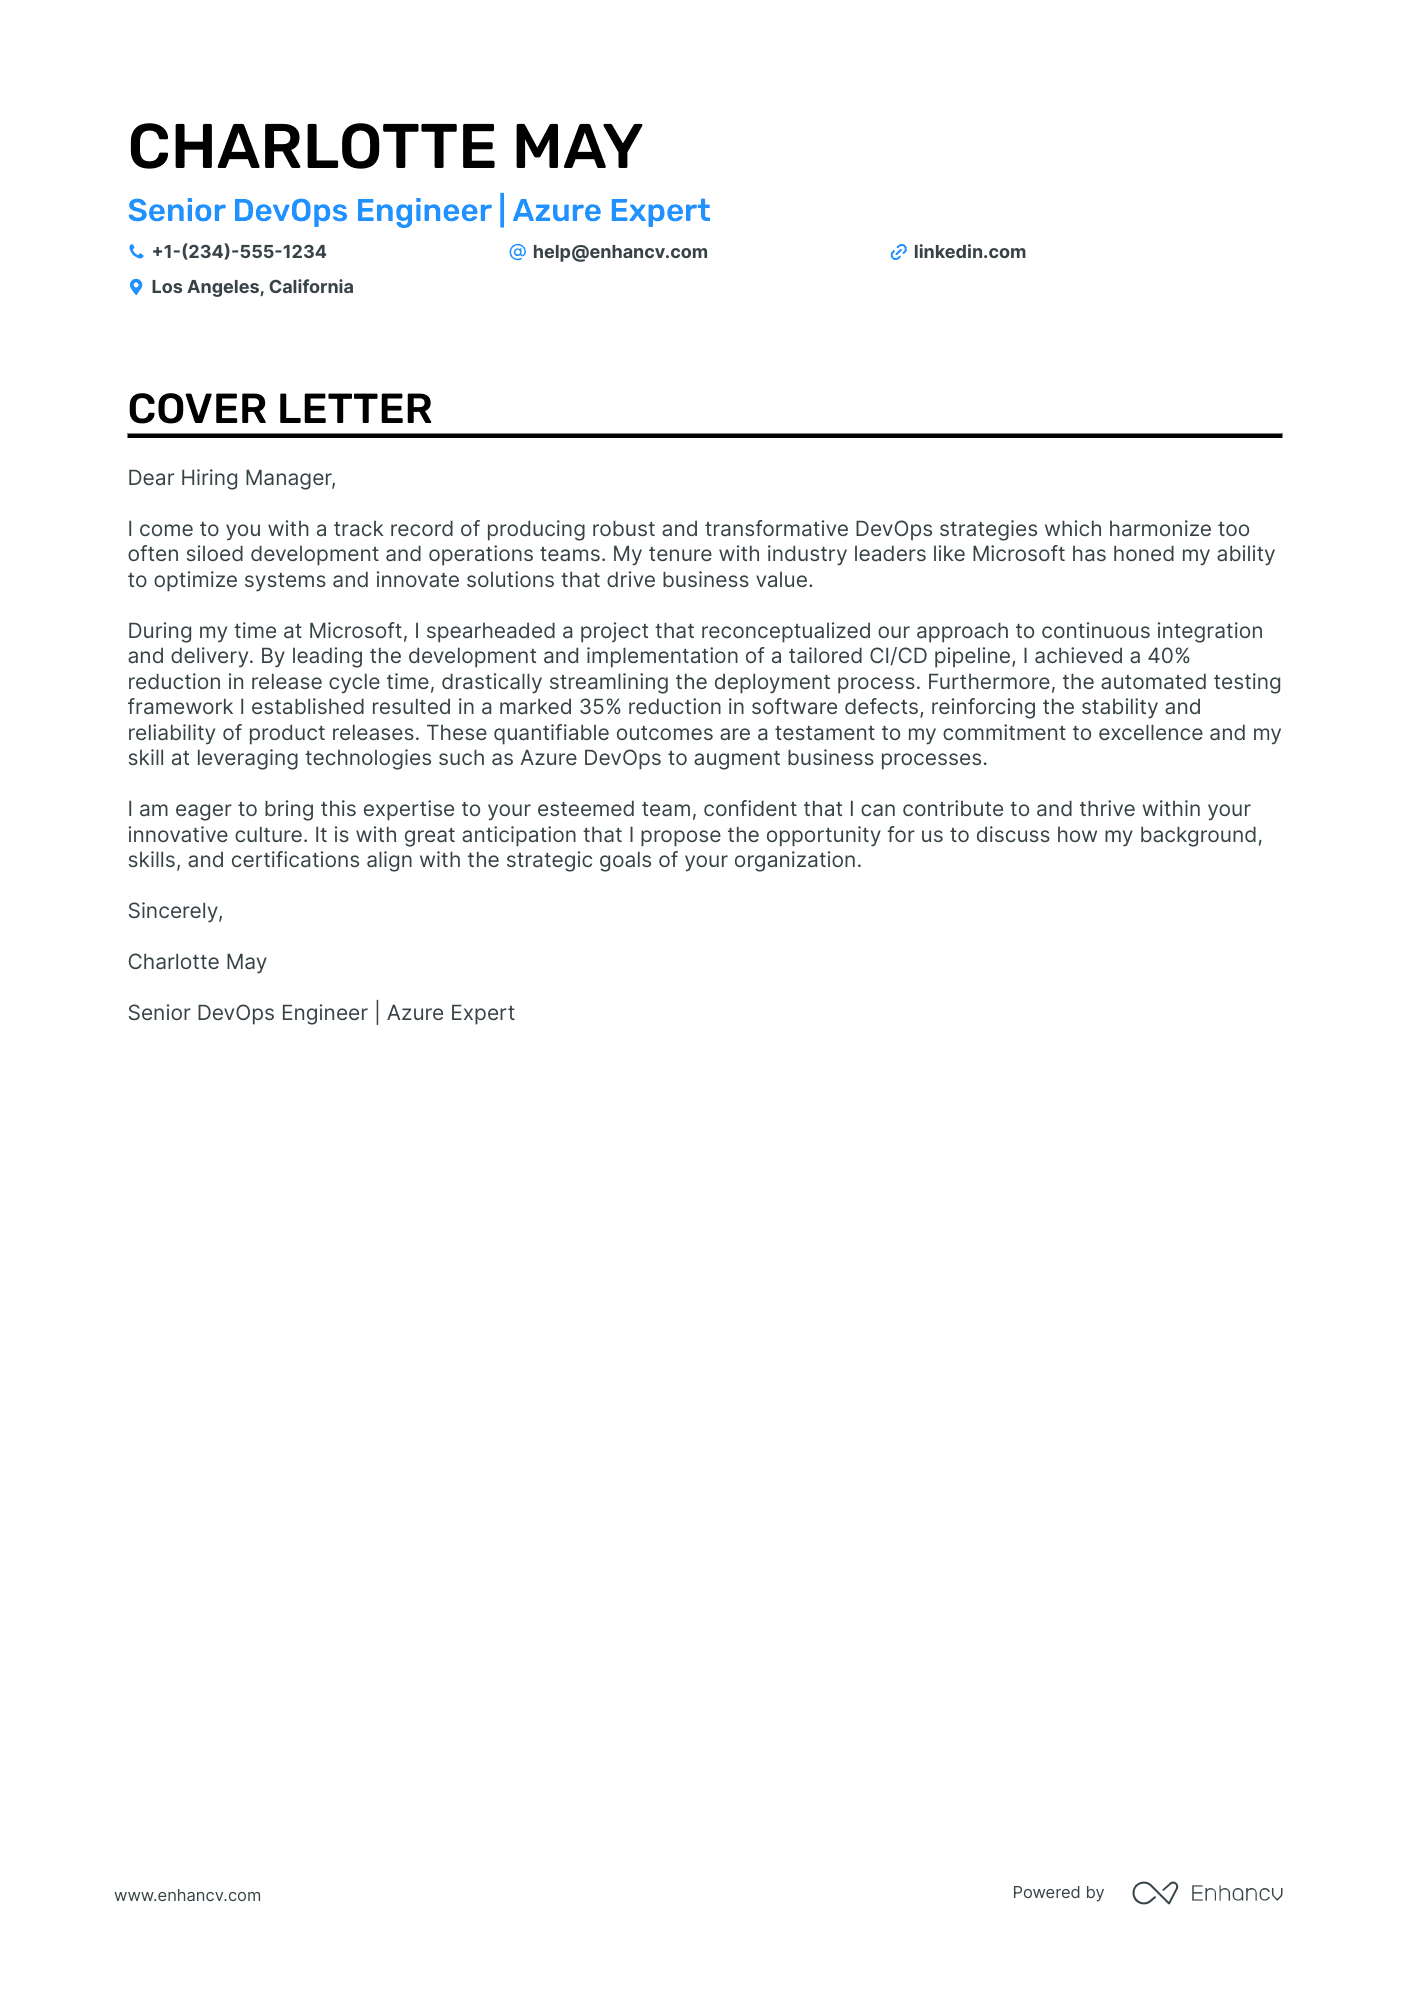 Senior Devops Engineer cover letter